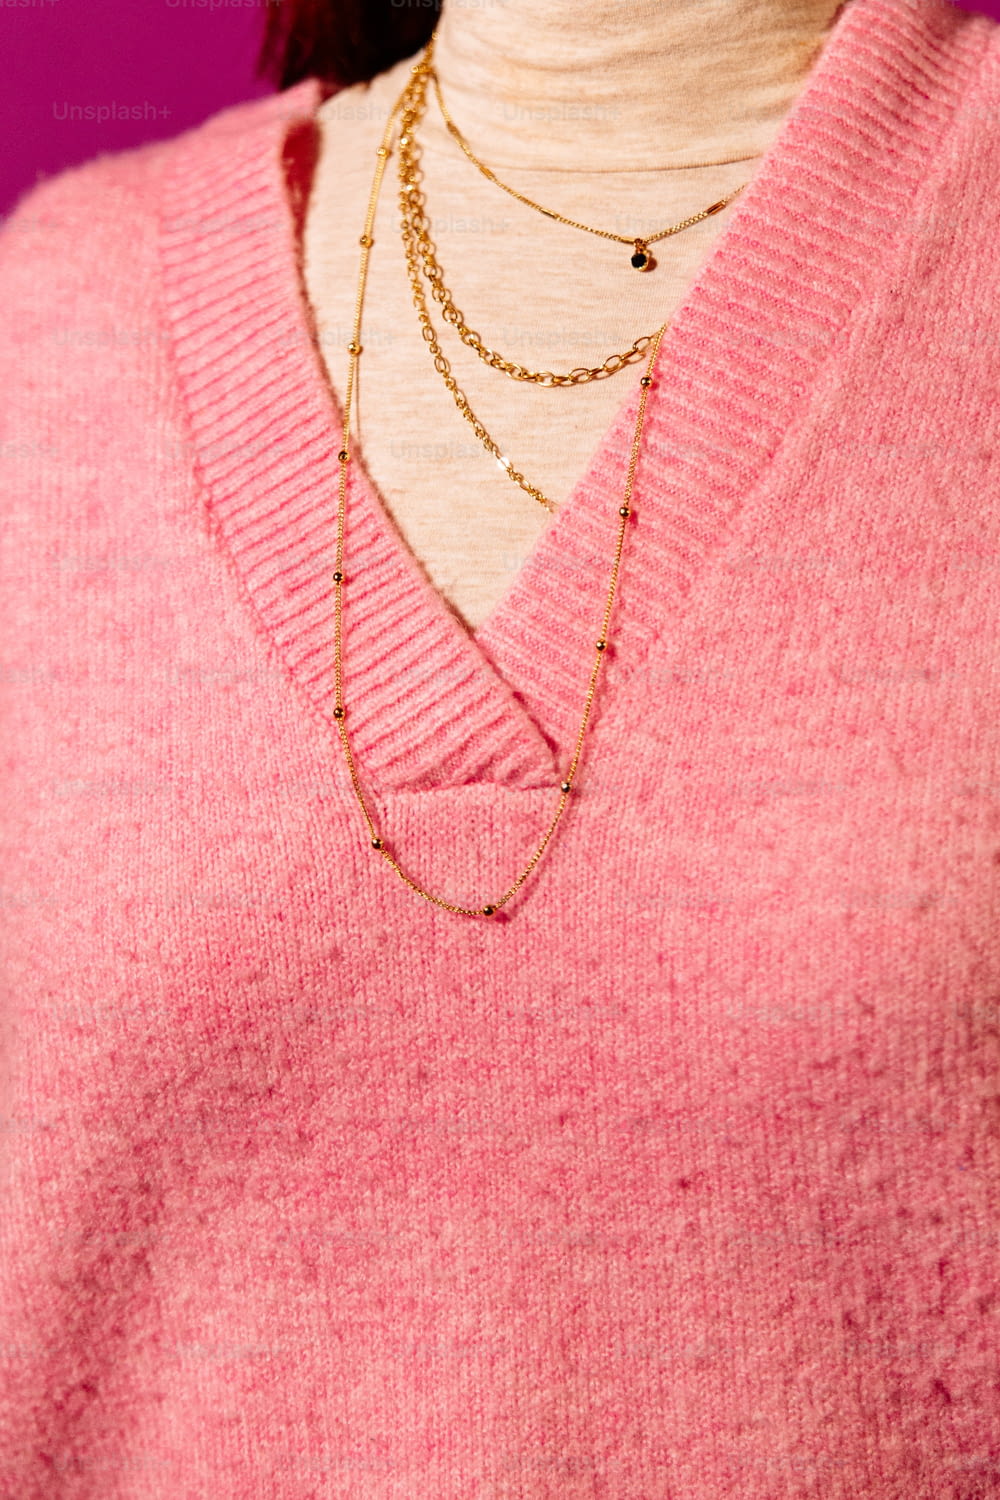 um close up de uma pessoa vestindo um suéter rosa